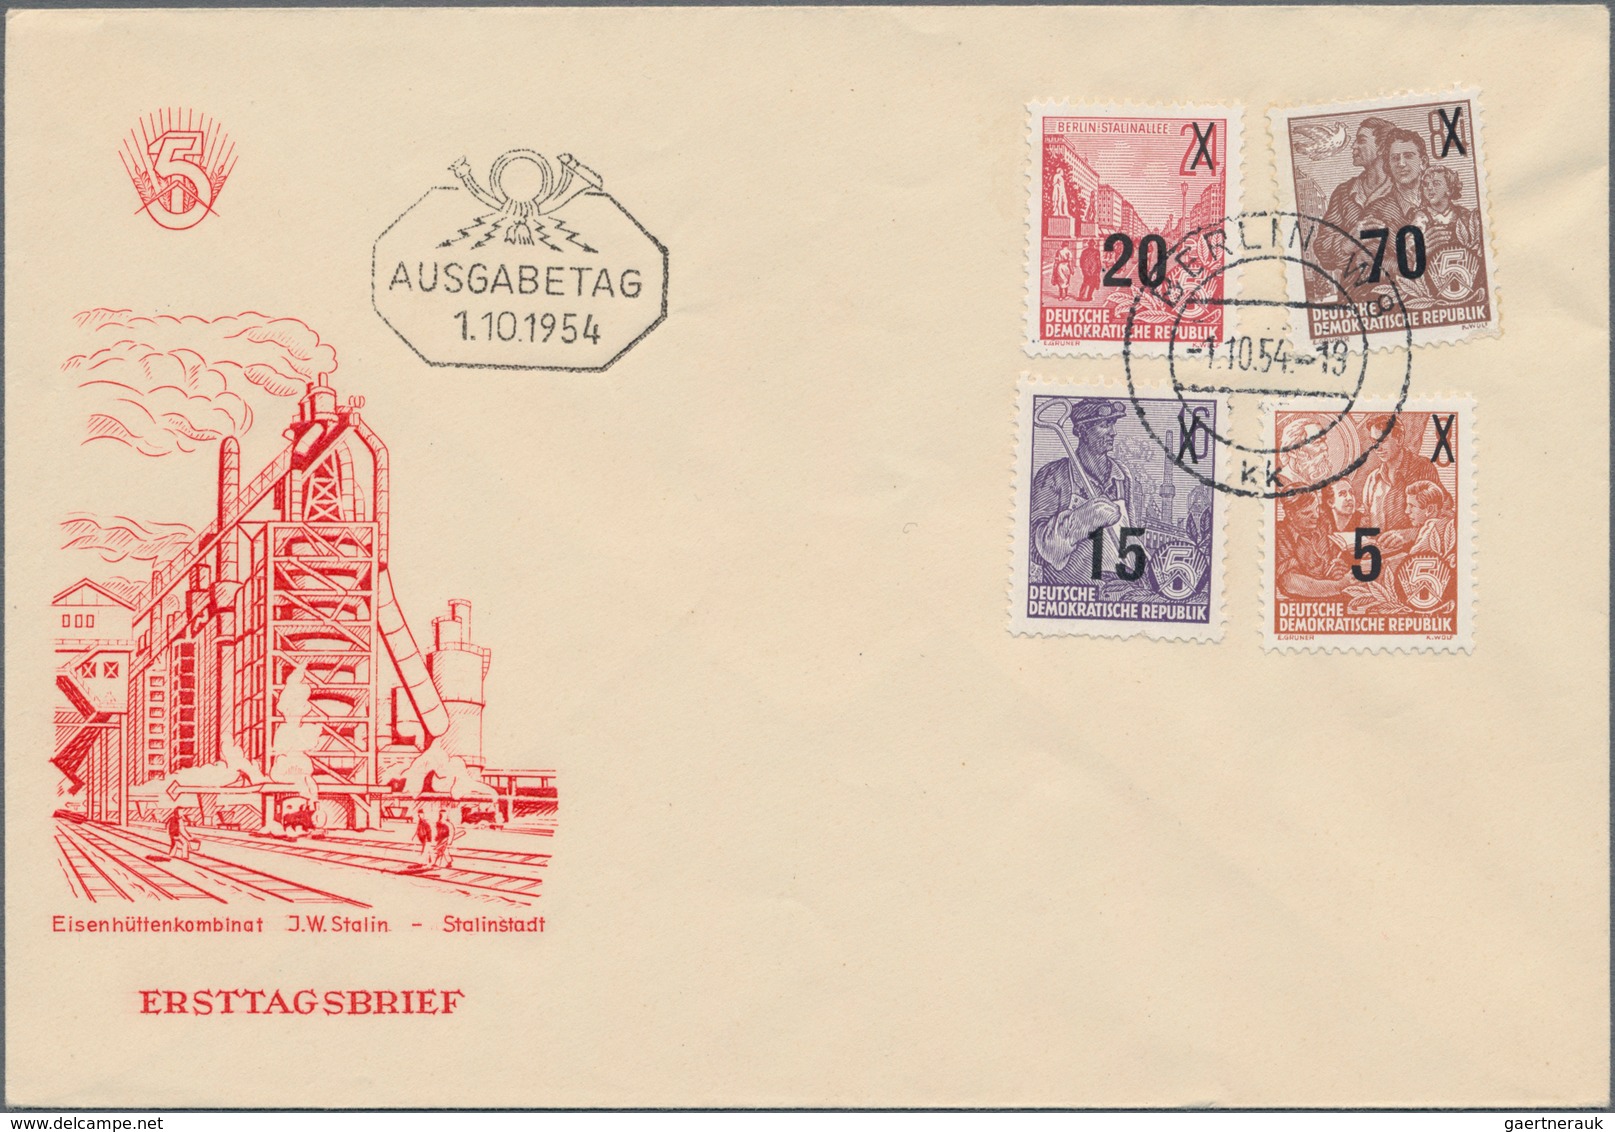 Sowjetische Zone und DDR: 1945/1990, vielseitige Partie von ca. 560 Briefen und Karten, dabei etlich